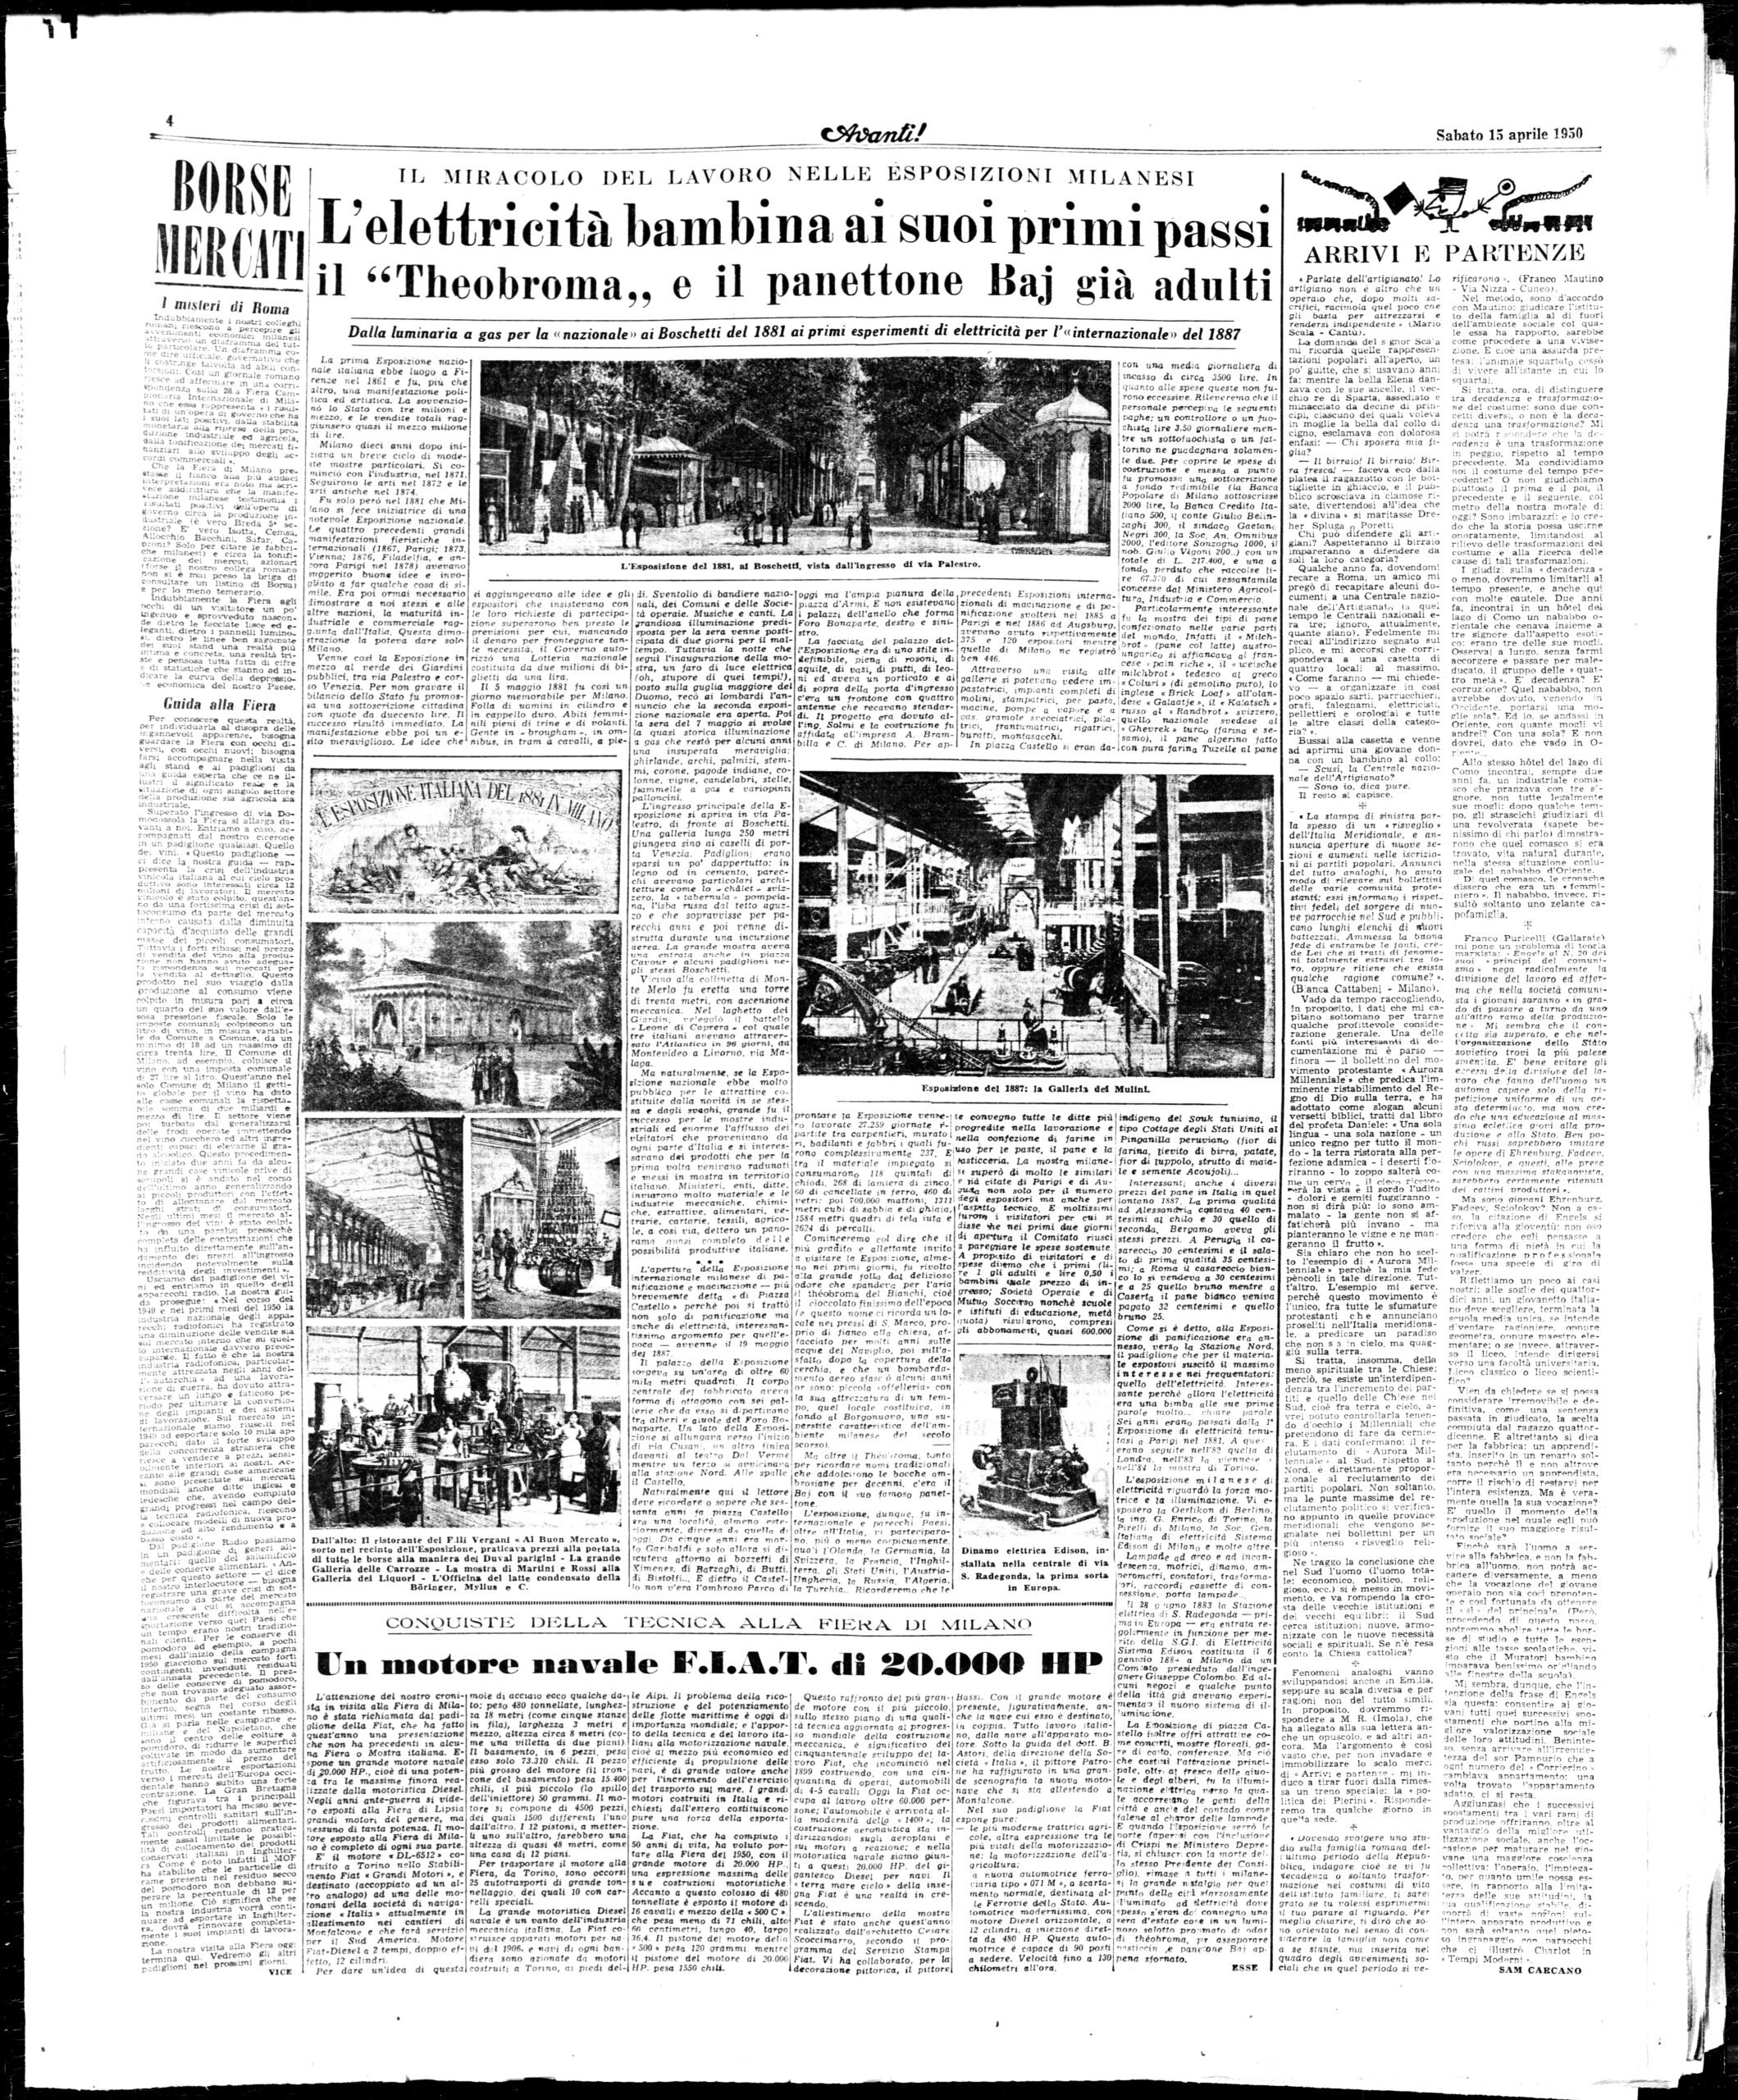 Avanti! - Articolo sull'Esposizione Universale del 1887 e il Panettone Baj pubblicato nel aprile 1950